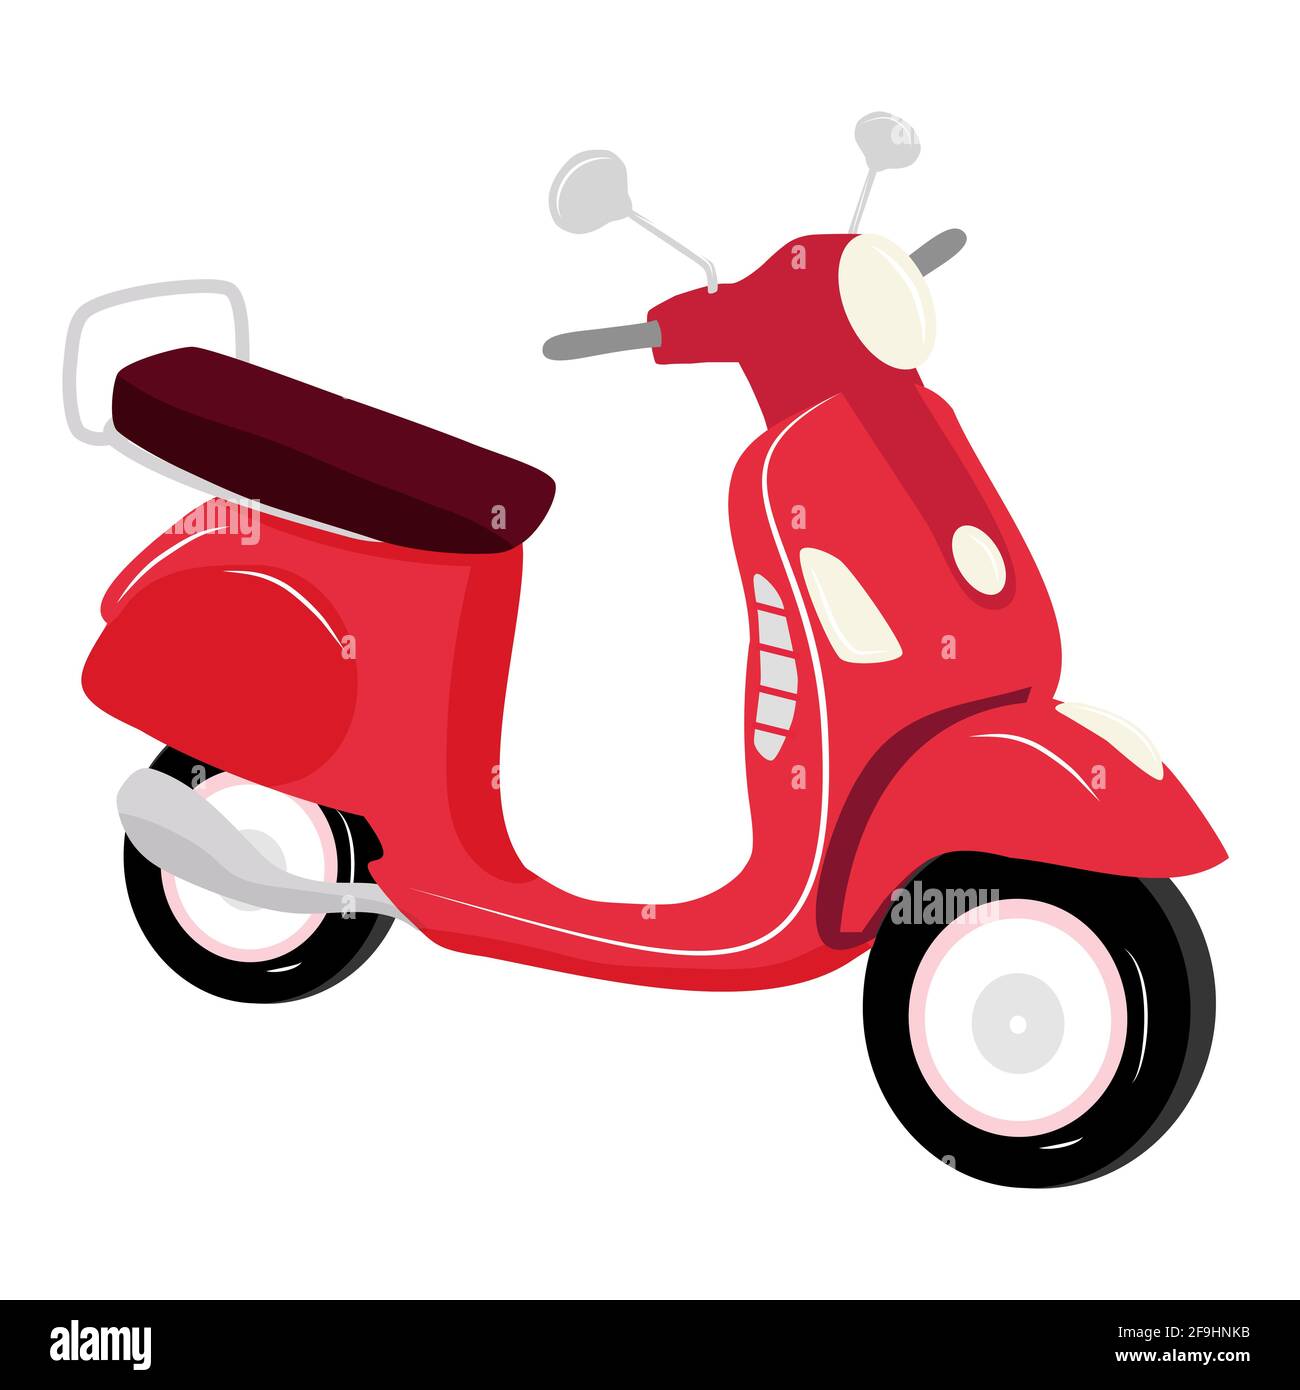 Rote Vintage-Roller auf weißem Hintergrund isoliert, Vektor-Illustration, Stadtleben, fahren Sie ein Motorrad in der Stadt. Mieten Sie sich ein Motorrad. Lieferung von Lebensmitteln und Boxen Stock Vektor